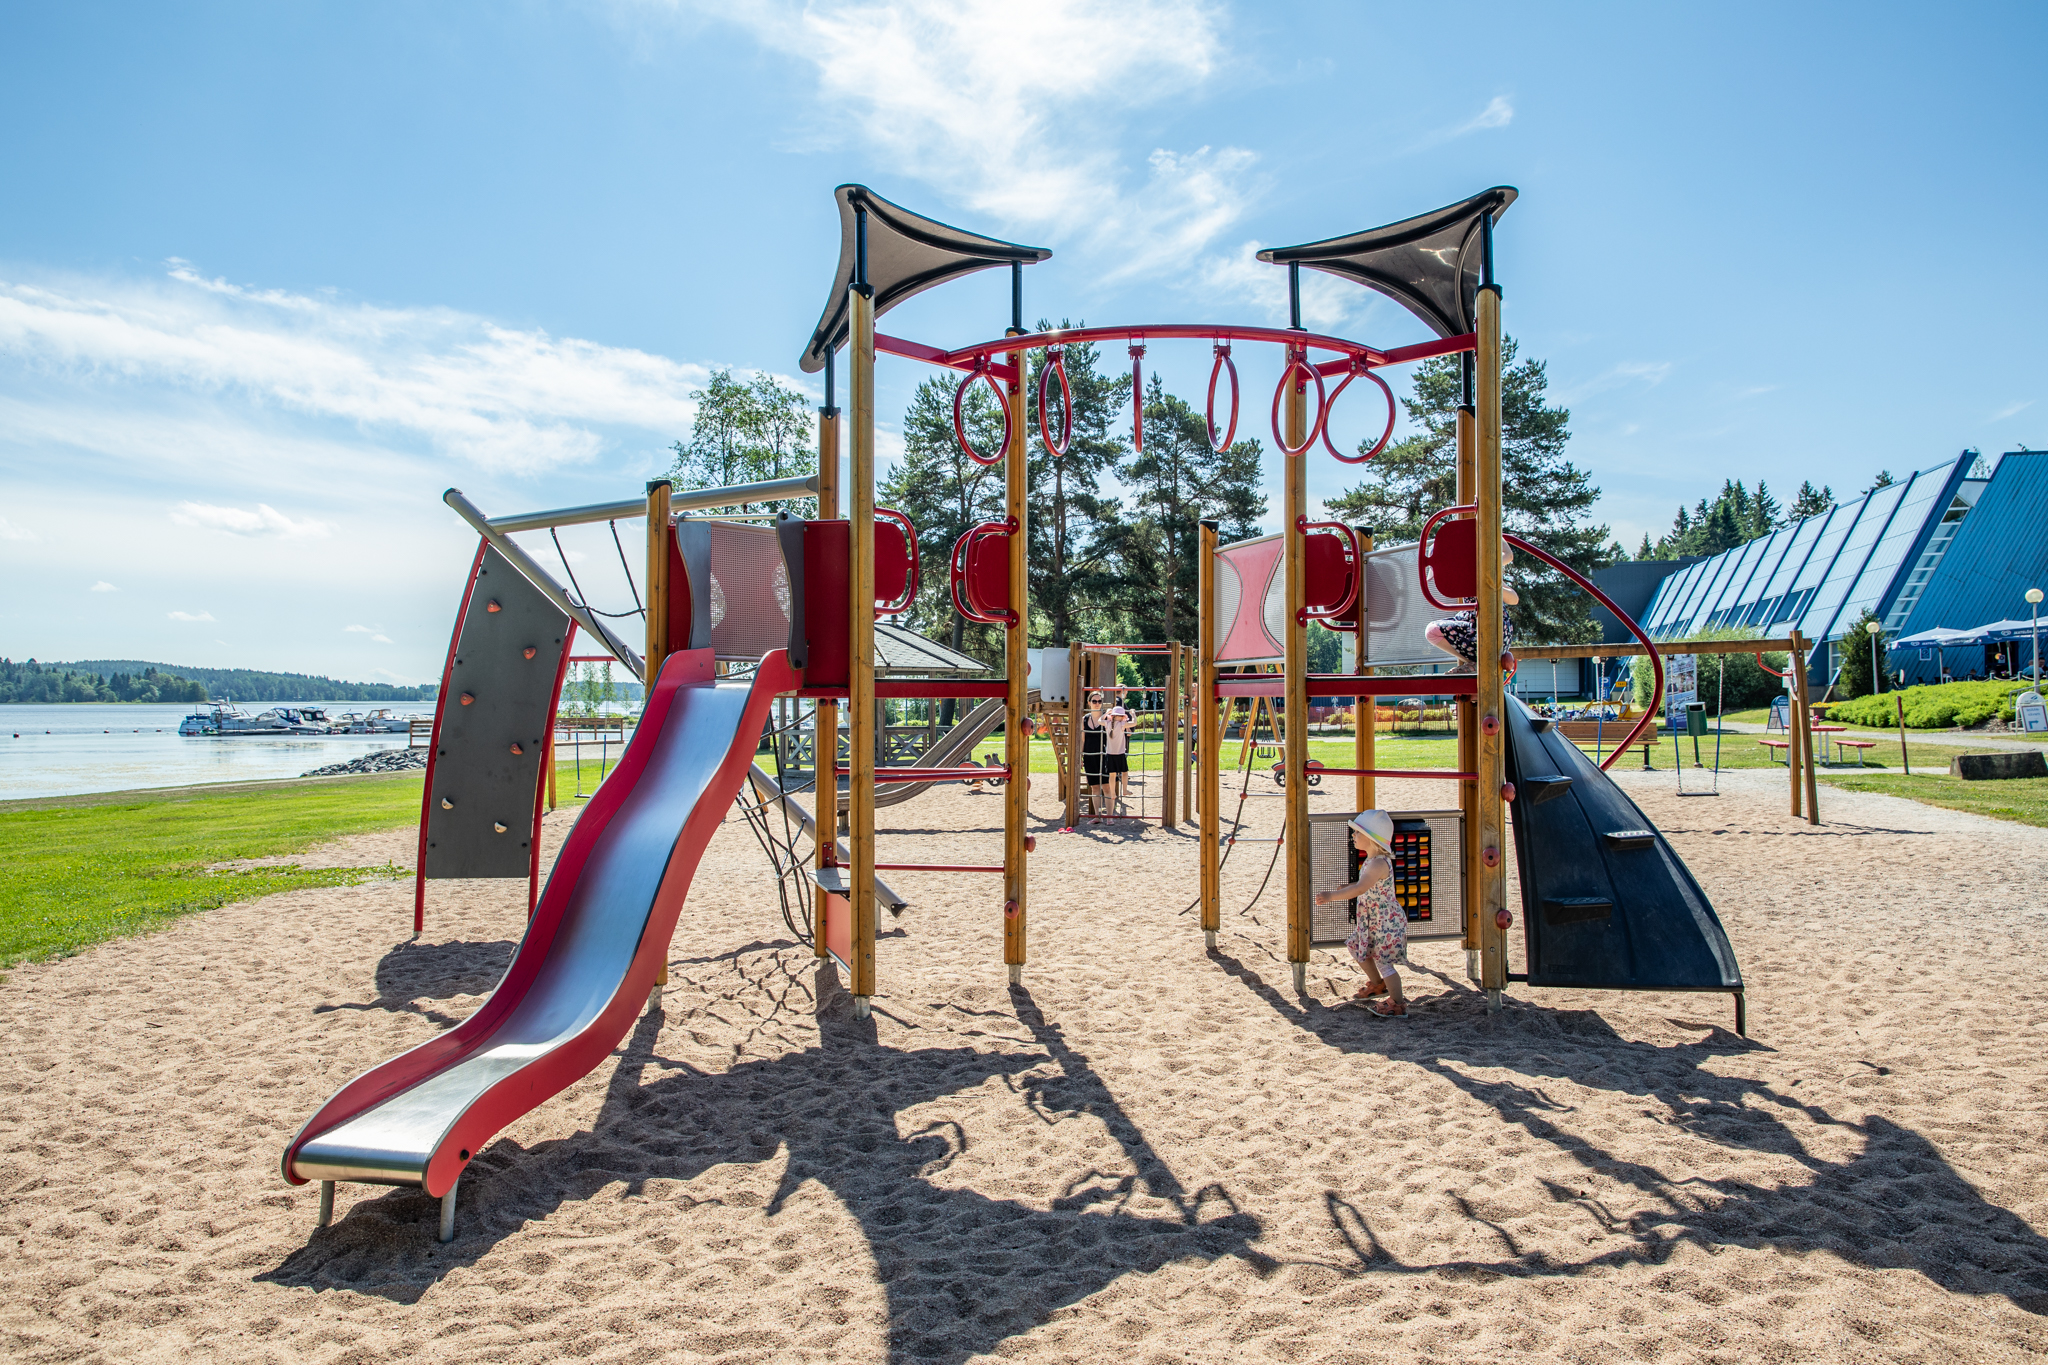 Aurinoinen lasten leikkipuisto kiipeilytelineineen ja liukumäkineen ranta-alueella.